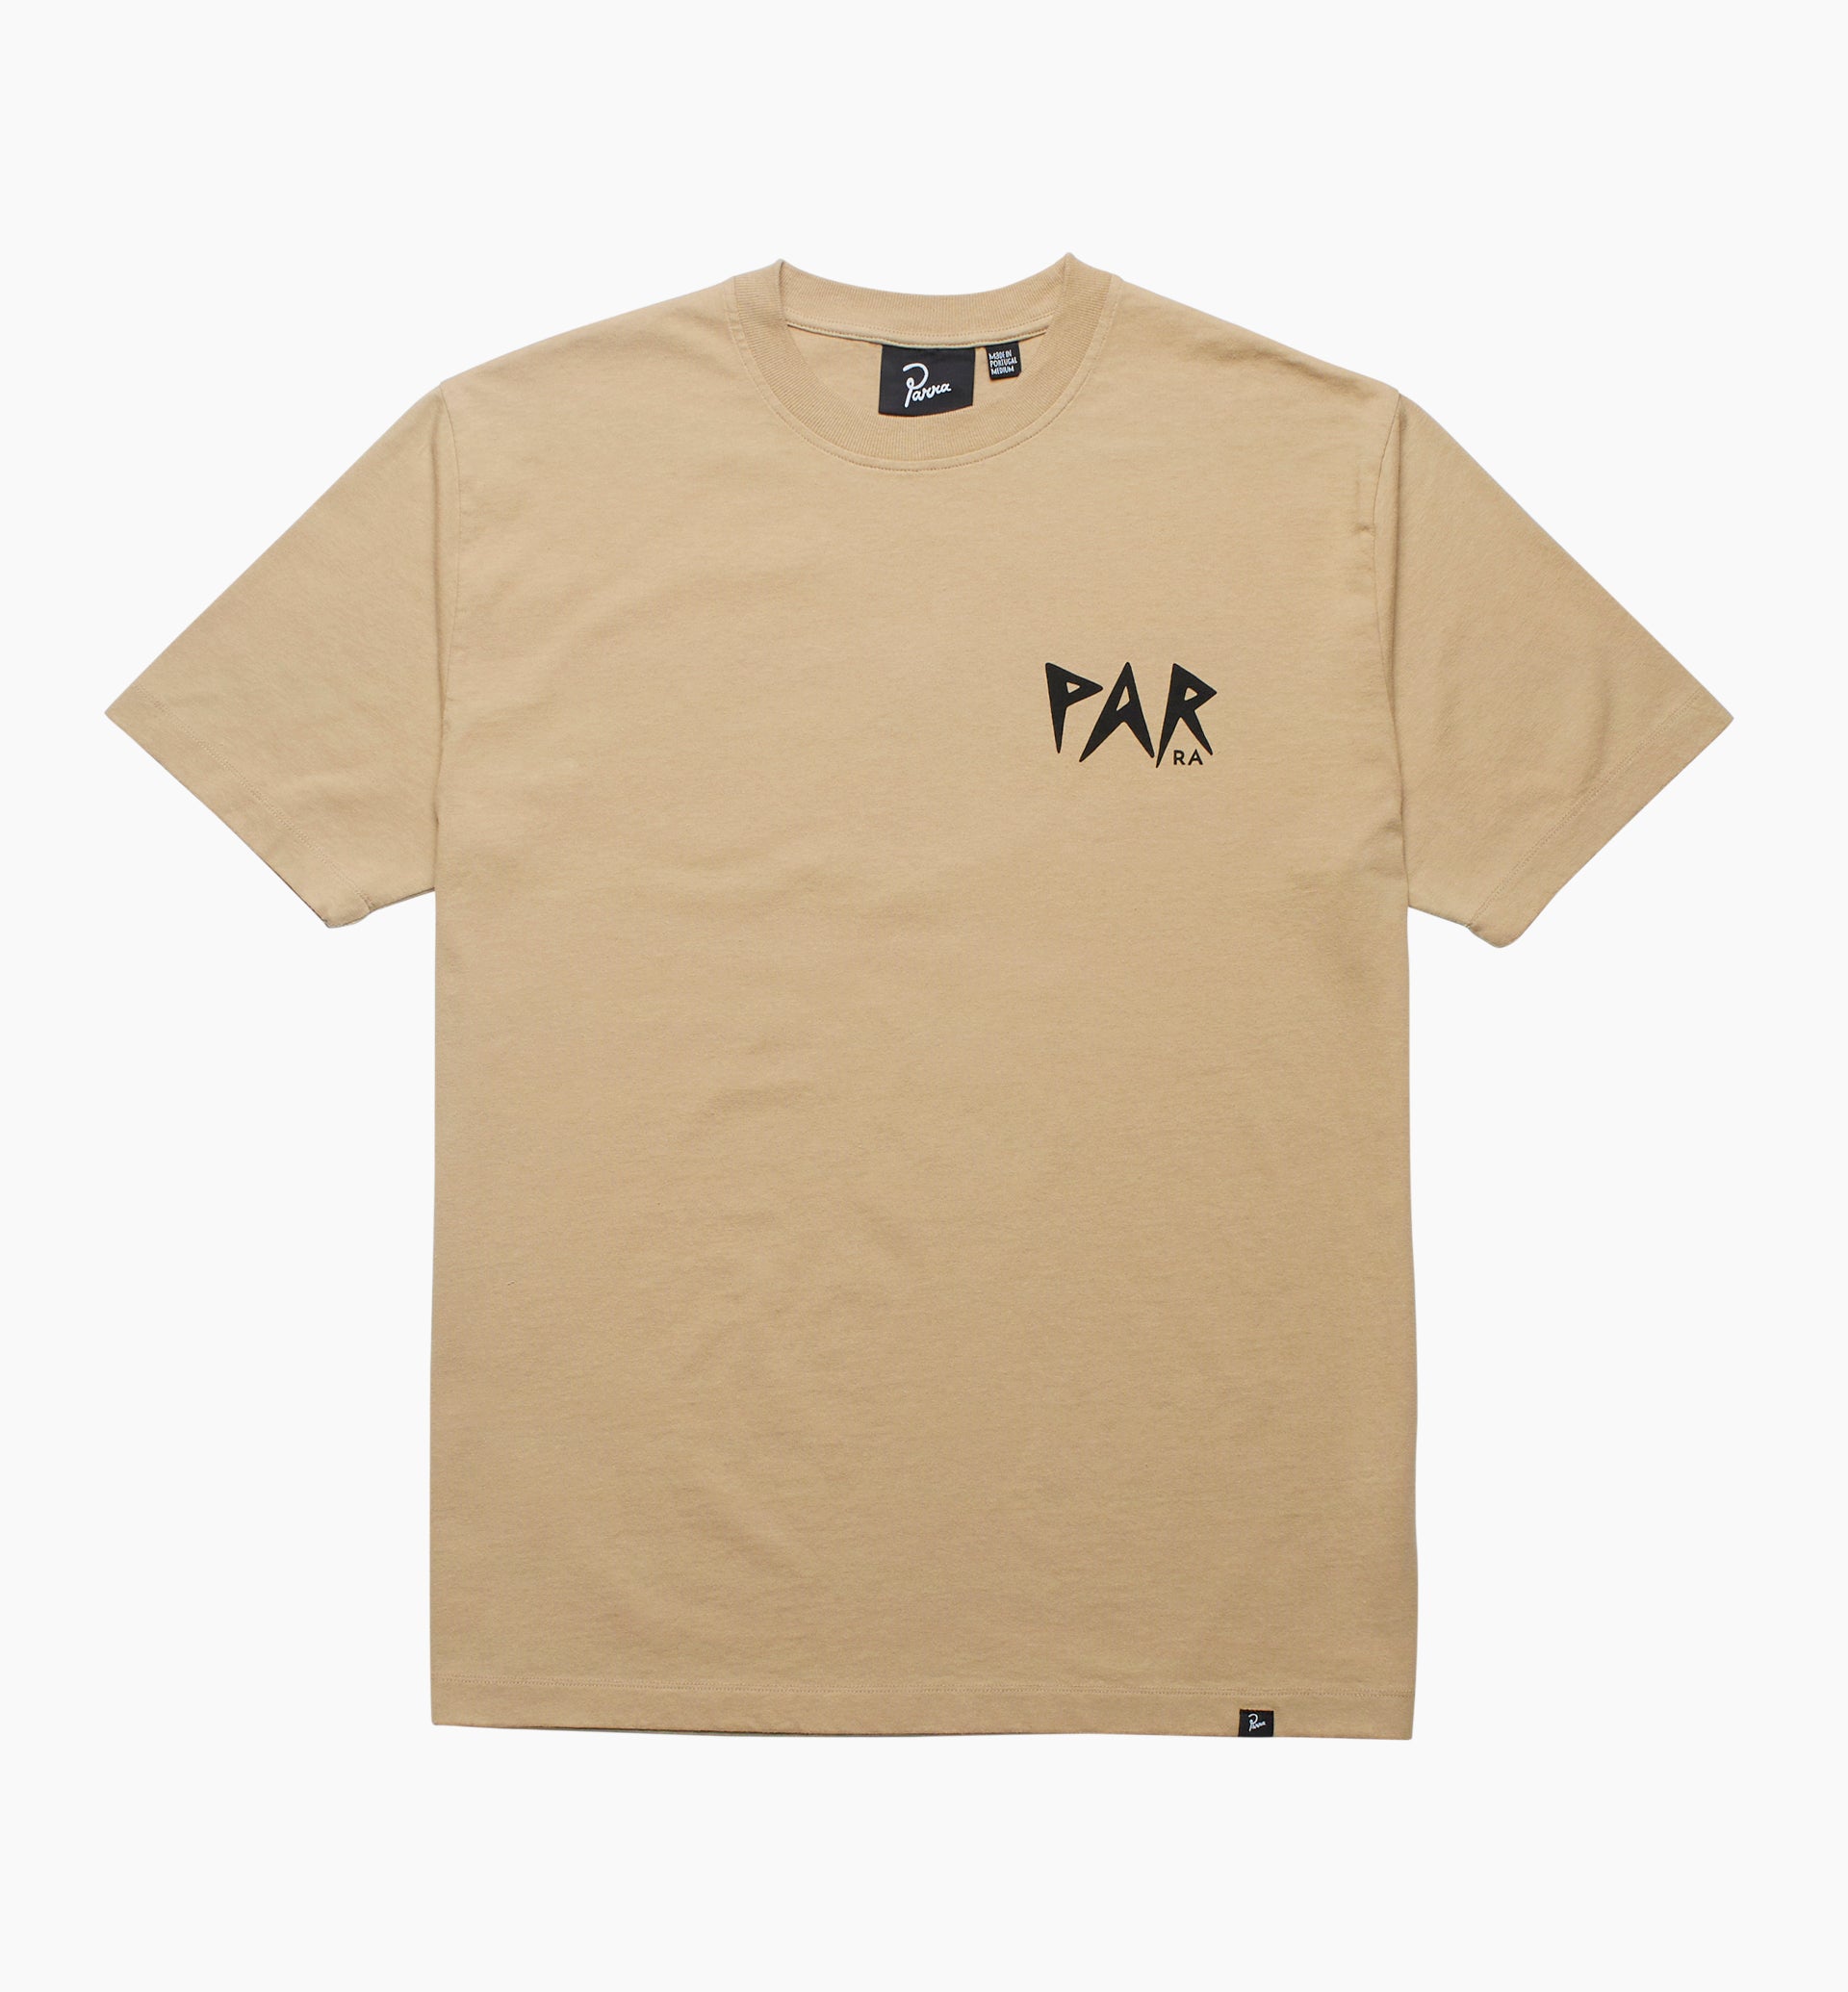 Parra - evil orange t-shirt